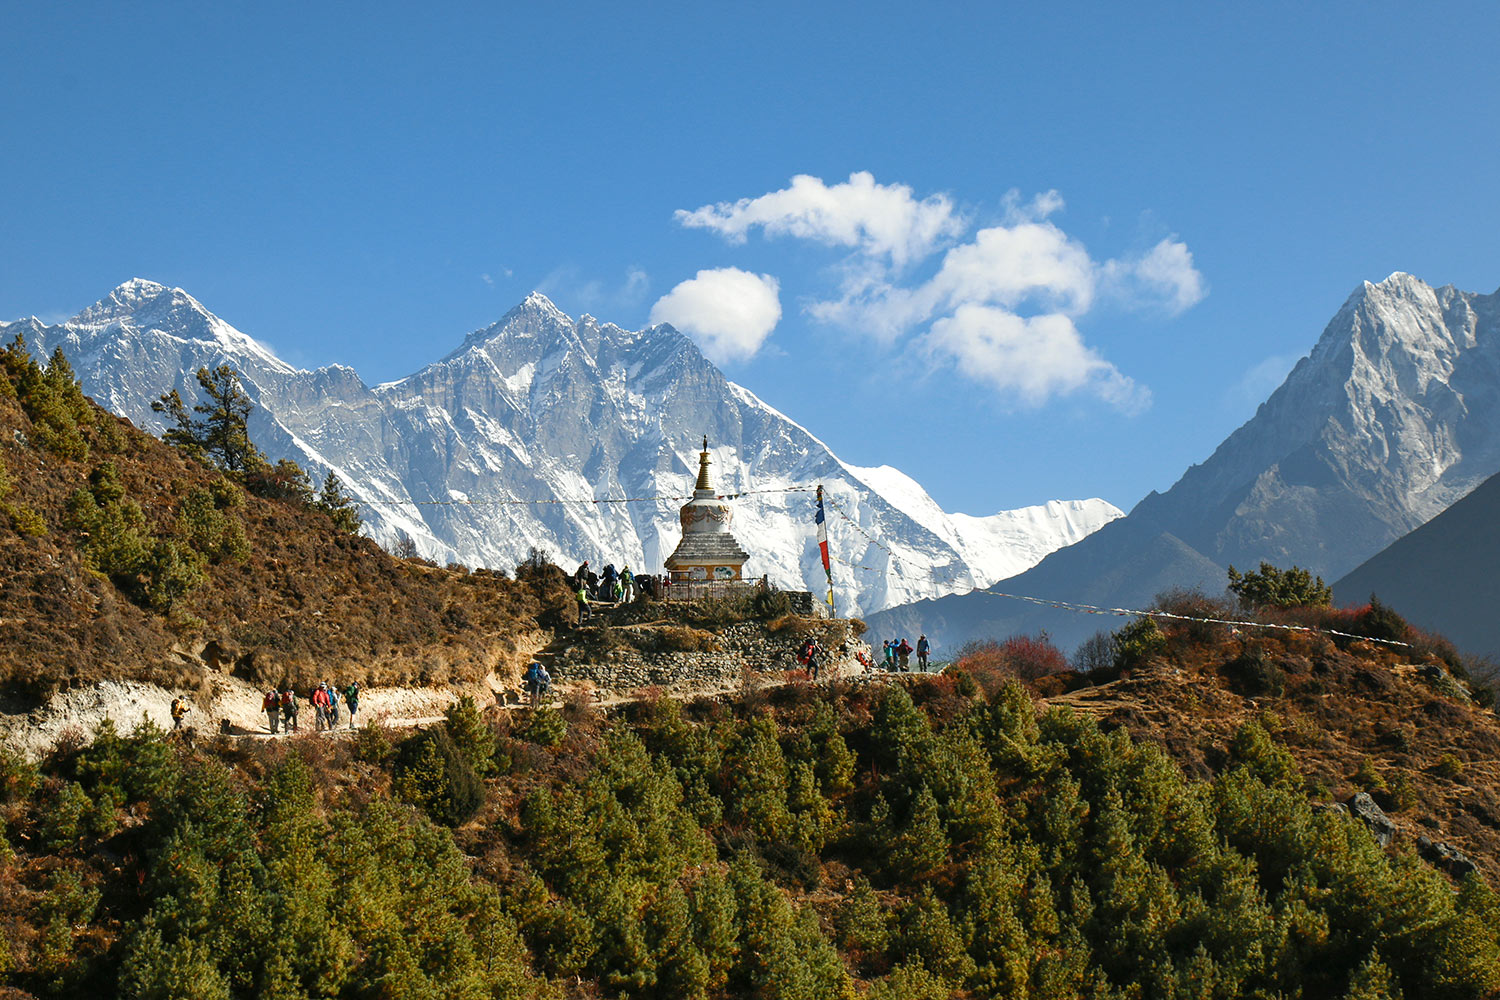 La vue sur le Mont Everest depuis Tengboche, Chorten, Népal / Mount Everest view from Tengboche, Chorten, Nepal